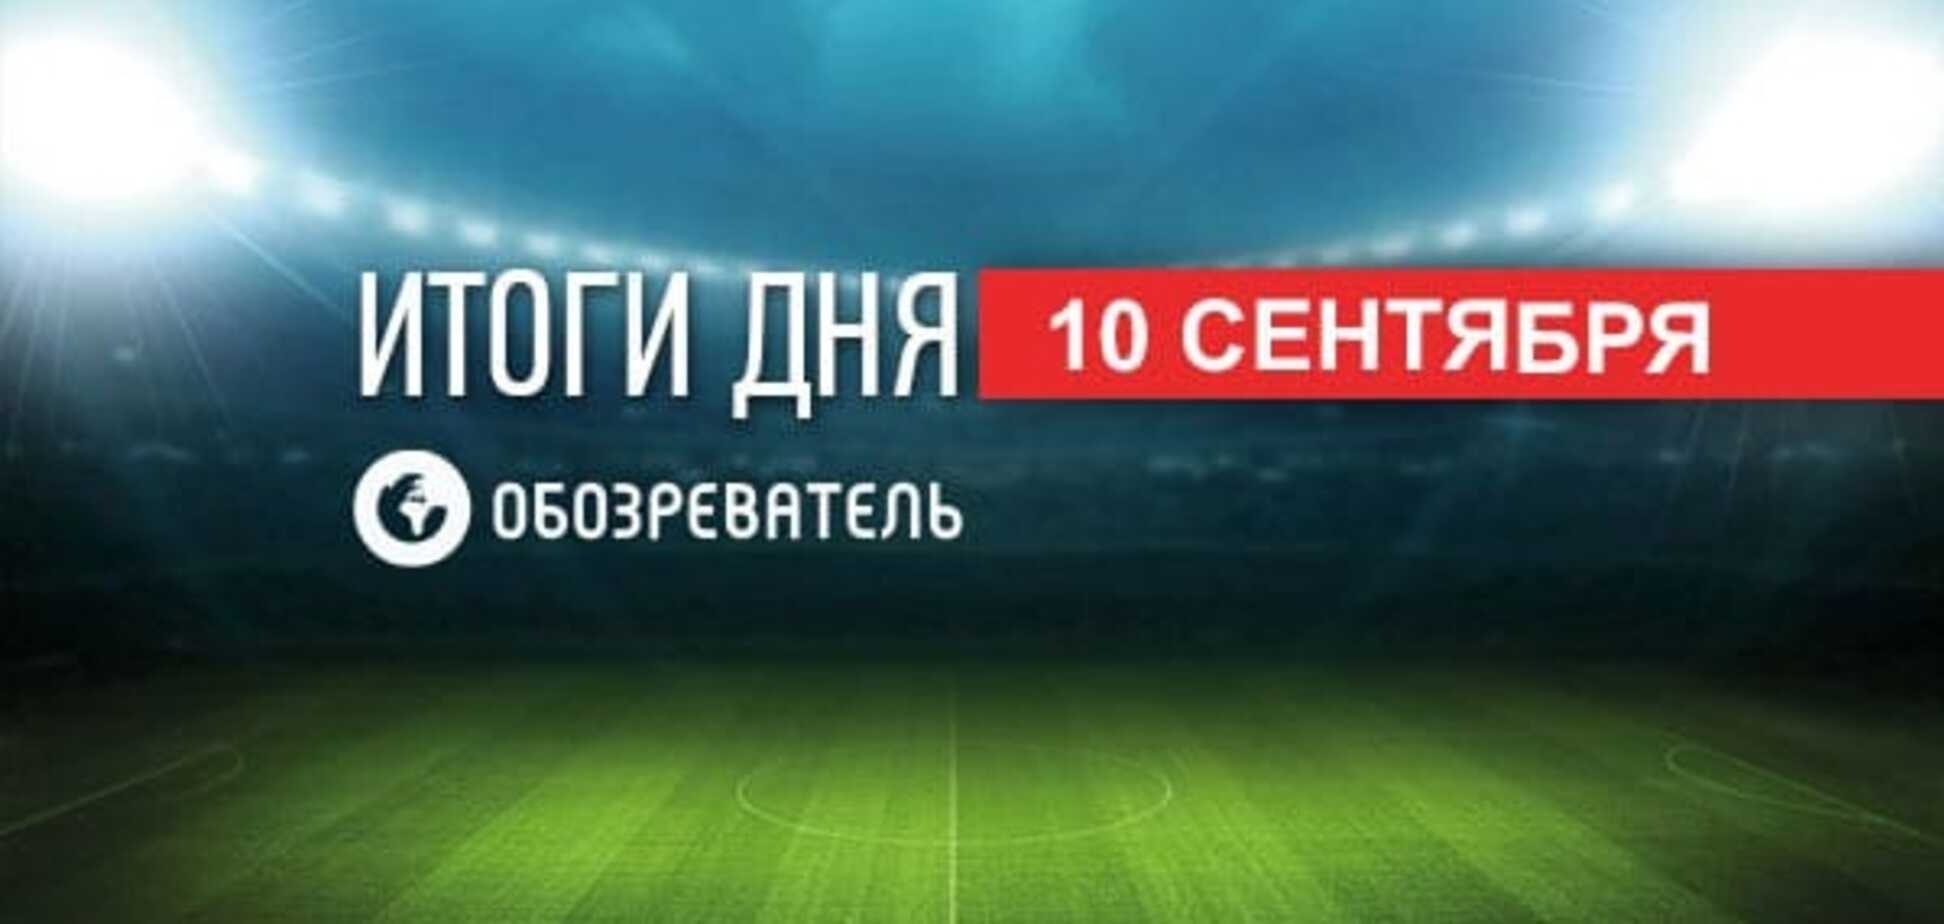 'Шахтер' - 'Динамо' в Москве и 'золото' Украины на Паралимпиаде: спортивные итоги 10 сентября